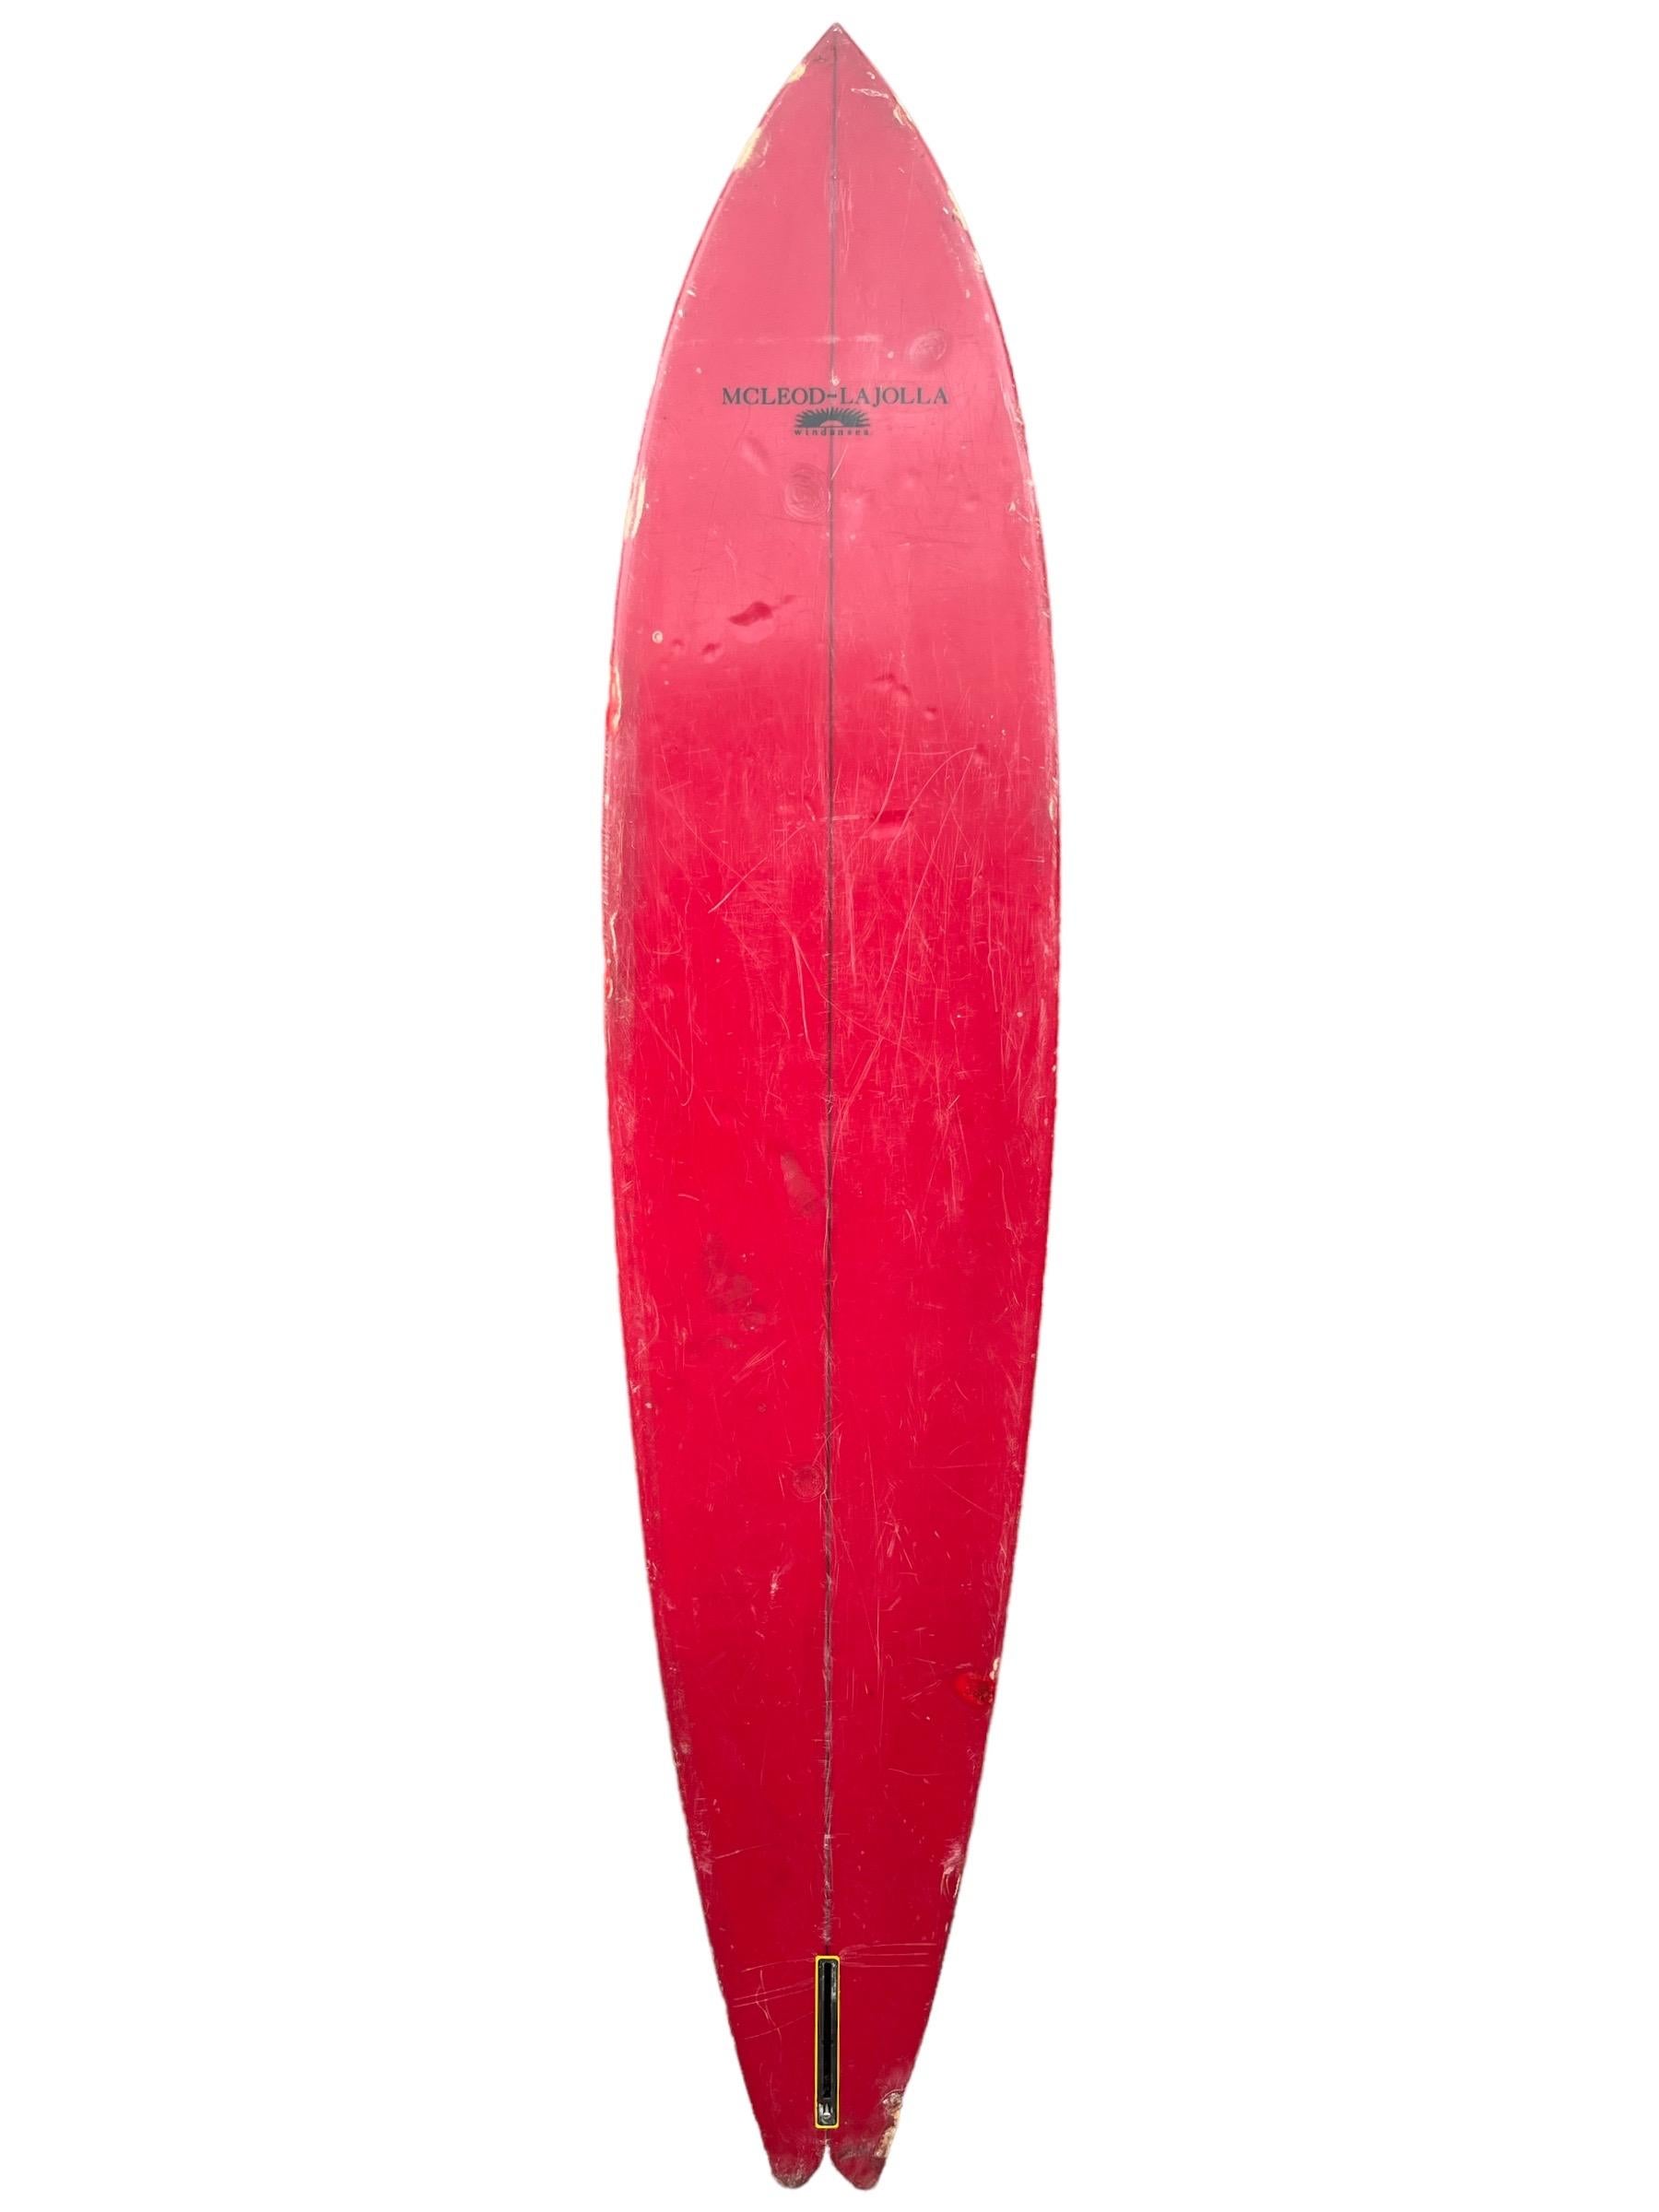 McLeod La Jolla Windansea Big Wave Surfboard von Ron McLeod aus den frühen 1970er Jahren. Mit originalem Artwork auf dem Deck mit rot umwickelten Rails/Bottom/Pinstriped Outline. Big Wave Schwalbenschwanzform Design. Ein einzigartiges Kunstwerk aus